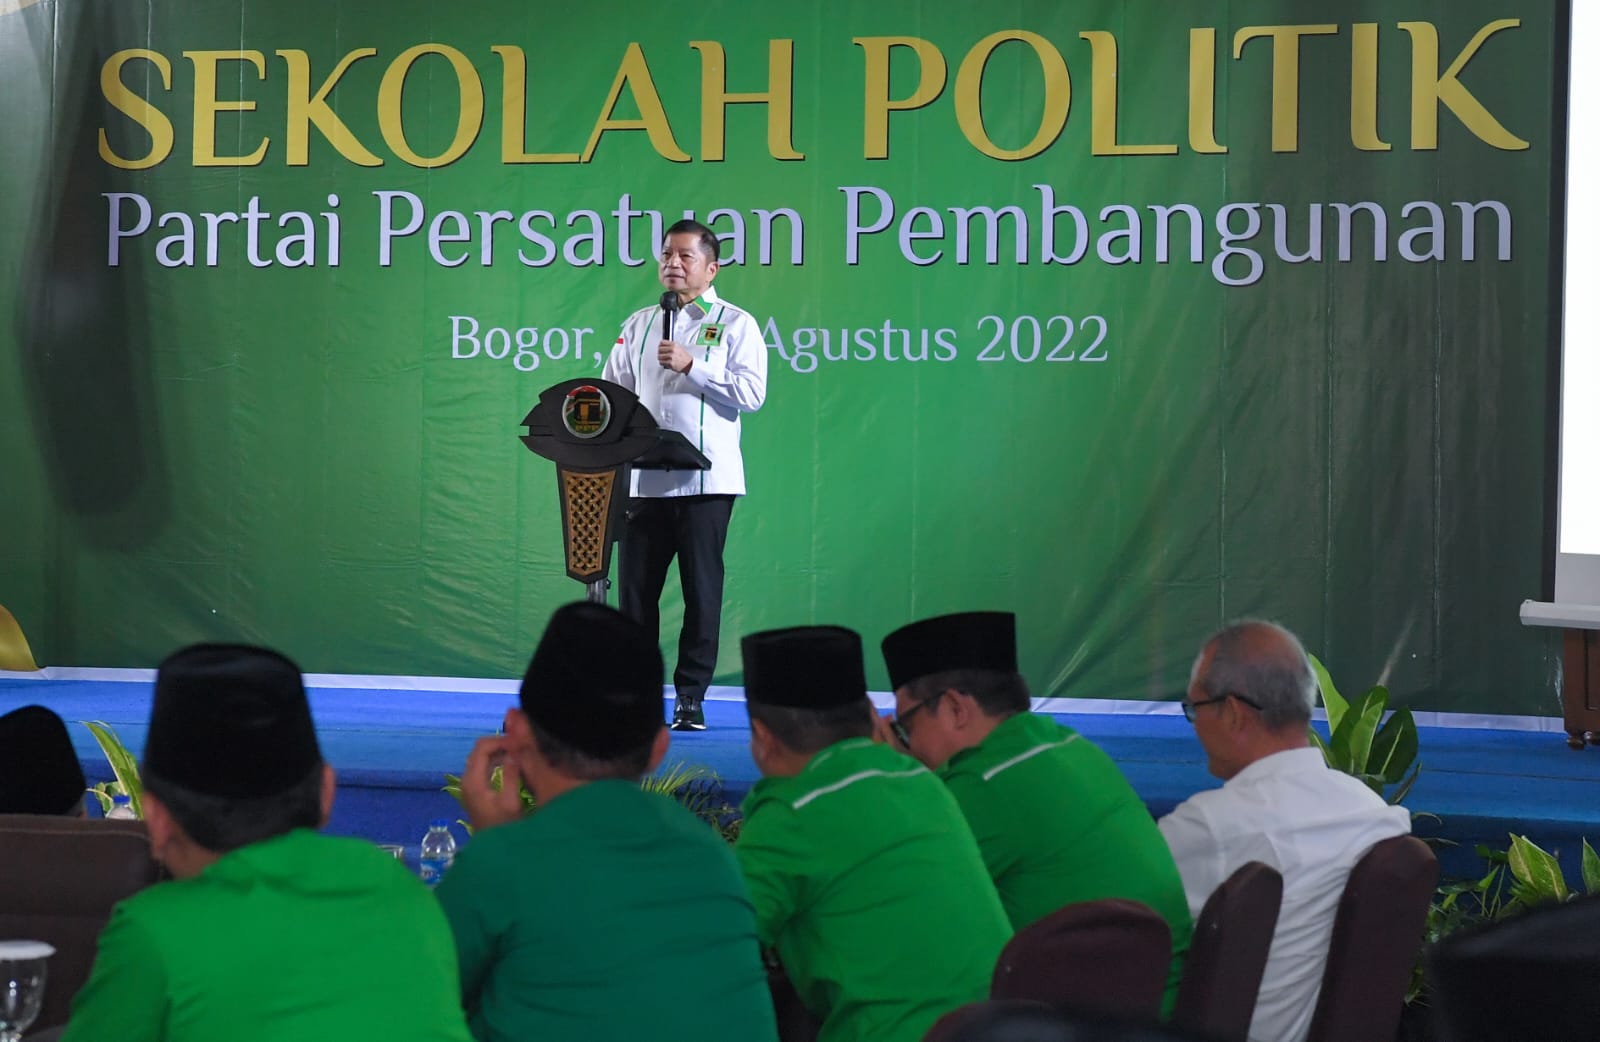 Ketum PPP Suharso Monoarfa saat menyatakan permohonan maafnya dalam acara sekolah politik di Bogor, Jumat (19/8/2022). Dok. Pribadi/Lingkar.co